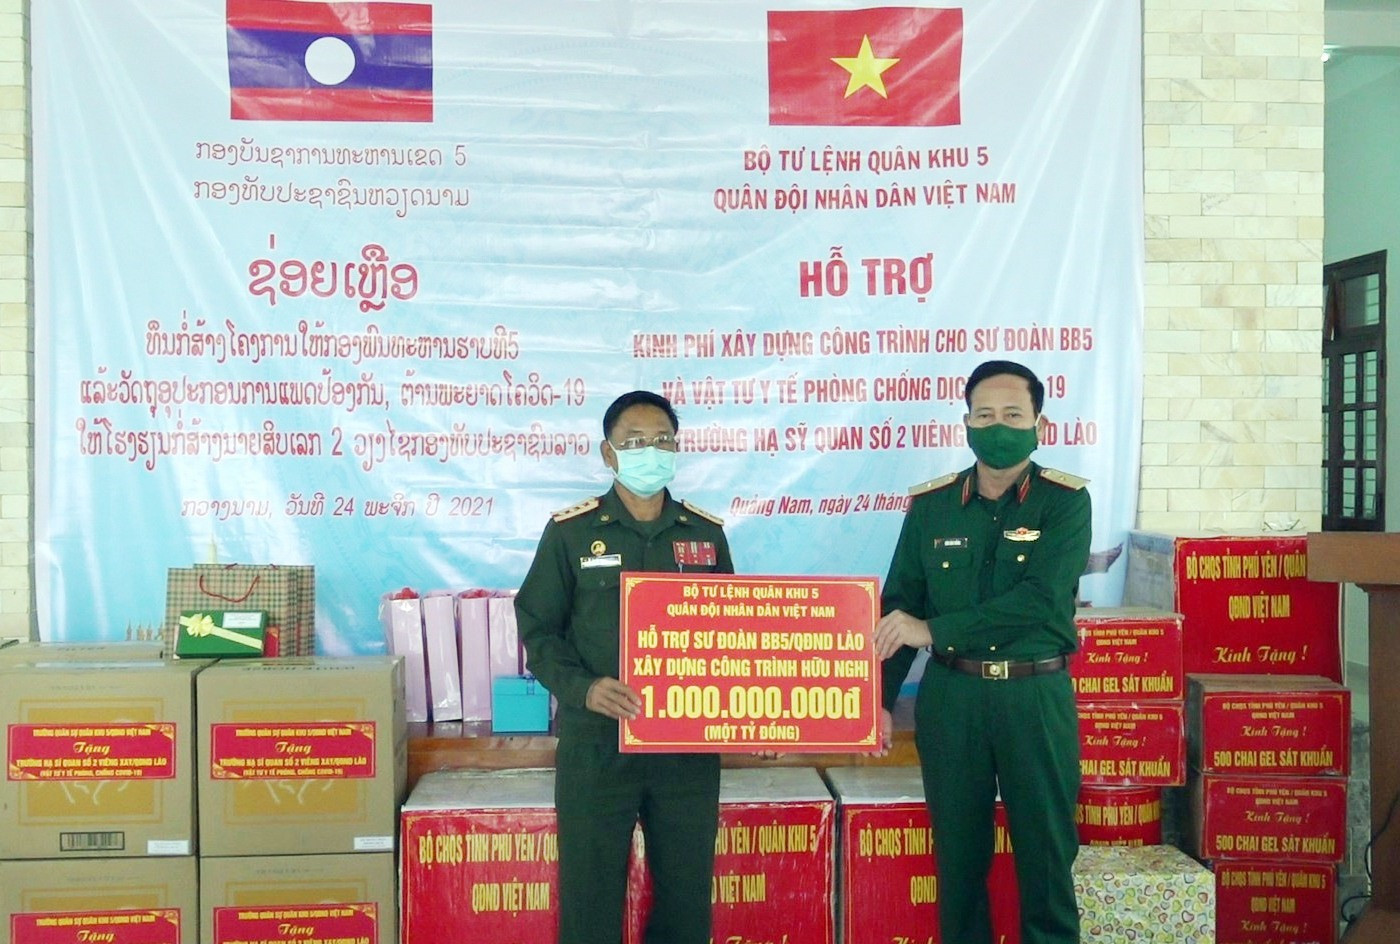 Thiếu tướng Hưá Văn Tưởng, Phó Tư Lệnh Quân khu bàn giao kinh phí hỗ trợ xây dựng công trình hữu nghị quân sự cho sư đoàn 5, QĐND Lào.